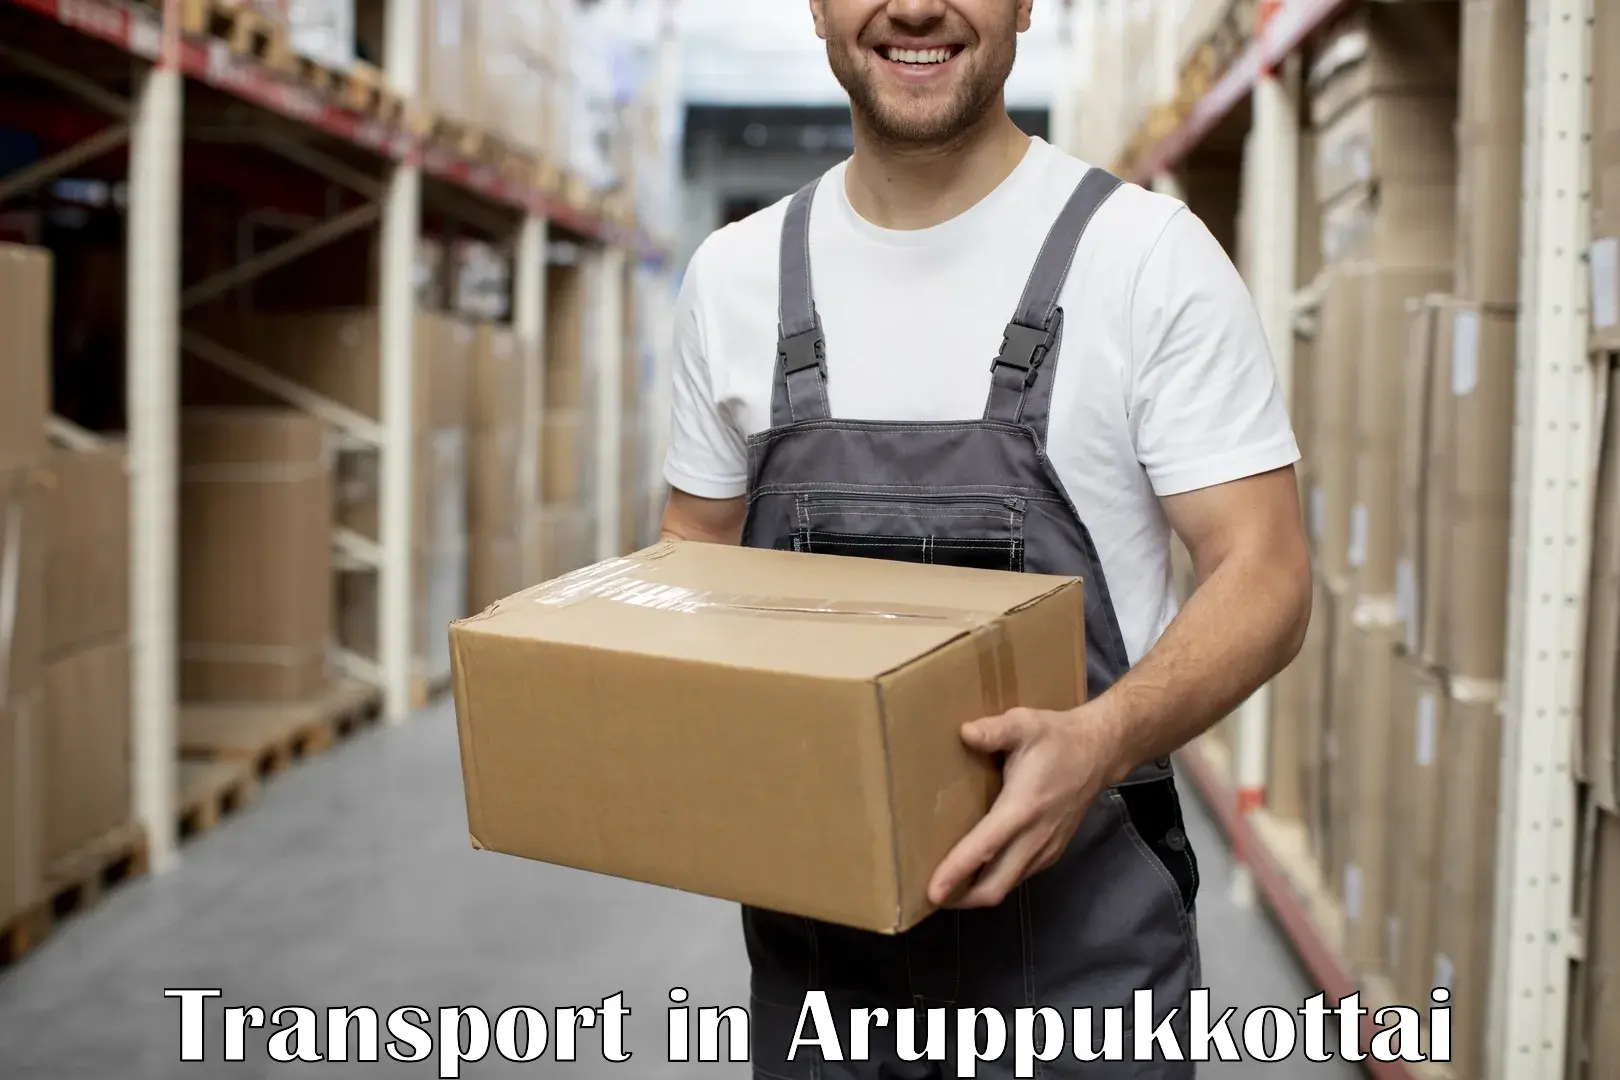 Transport shared services in Aruppukkottai